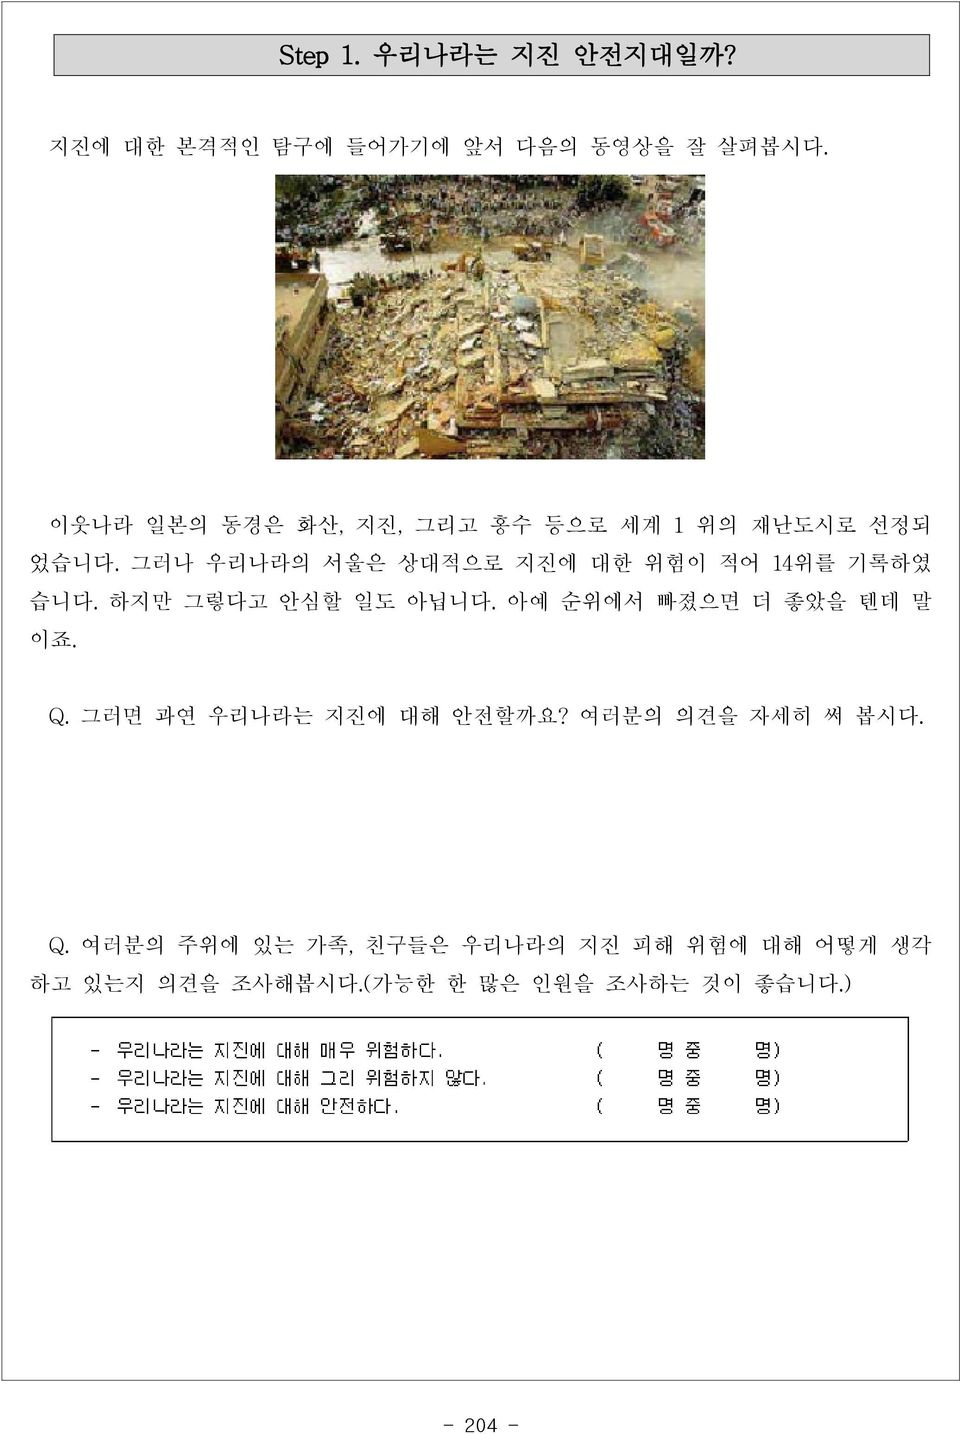 그러나 우리나라의 서울은 상대적으로 지진에 대한 위험이 적어 14위를 기록하였 습니다. 하지만 그렇다고 안심할 일도 아닙니다.